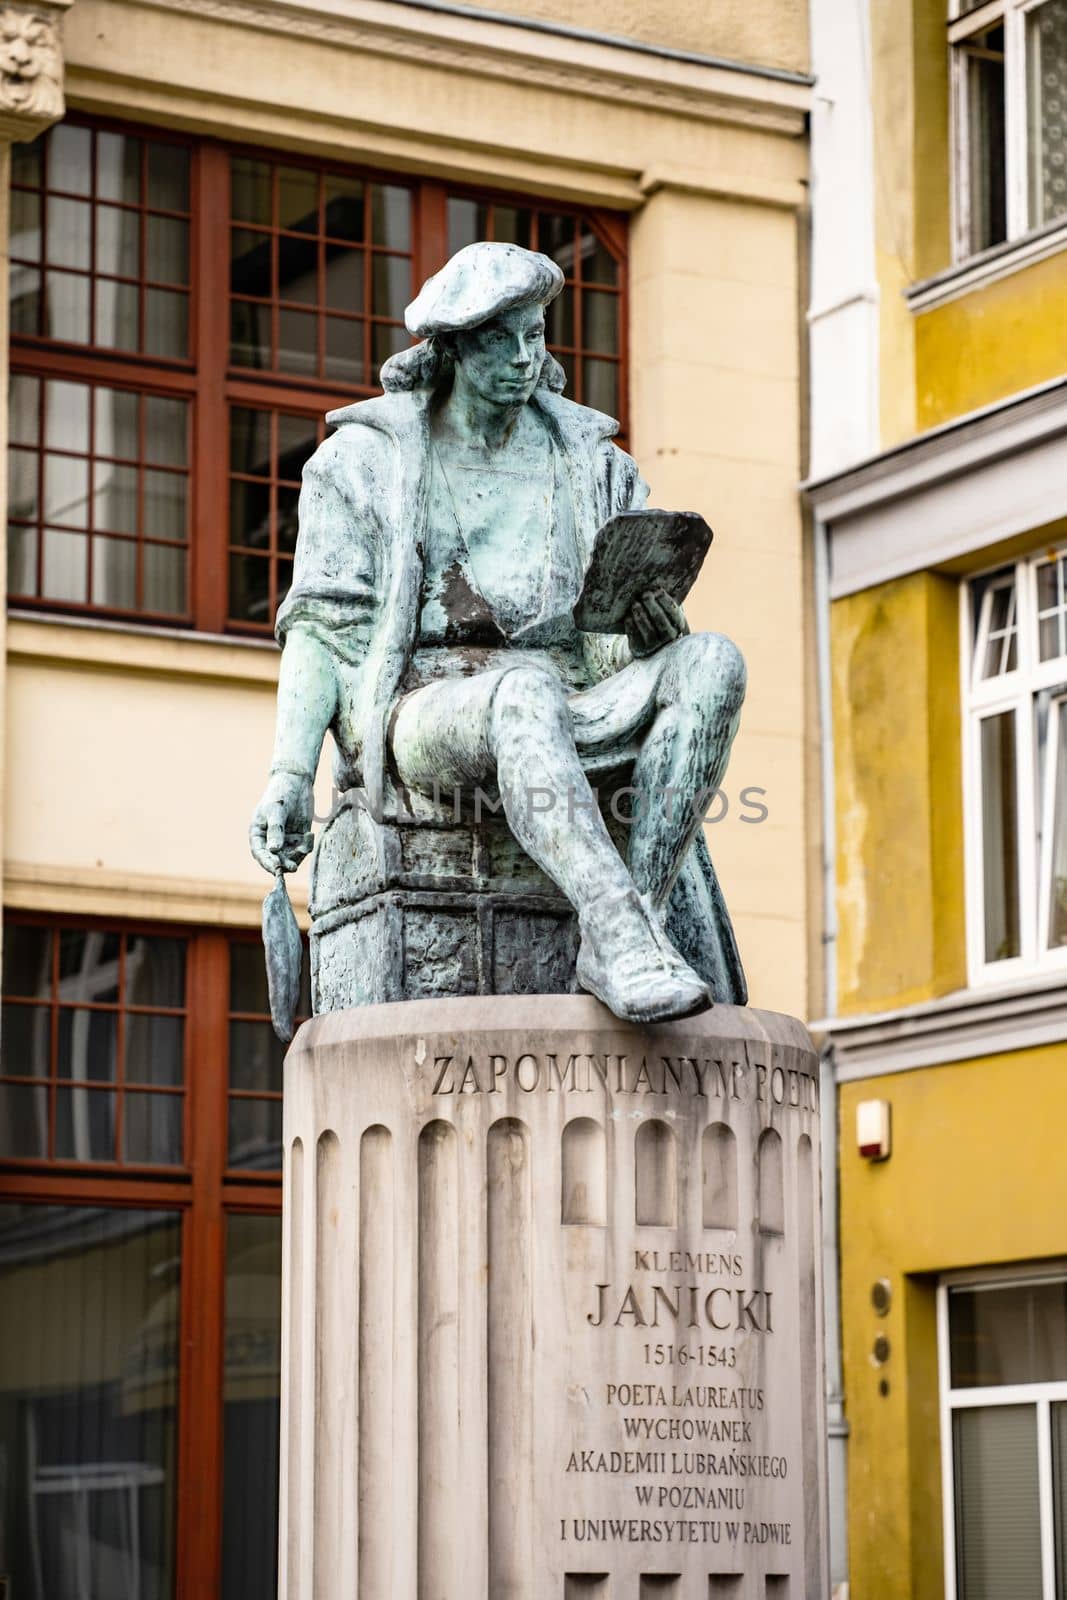 Klemens Janicki statue by GekaSkr